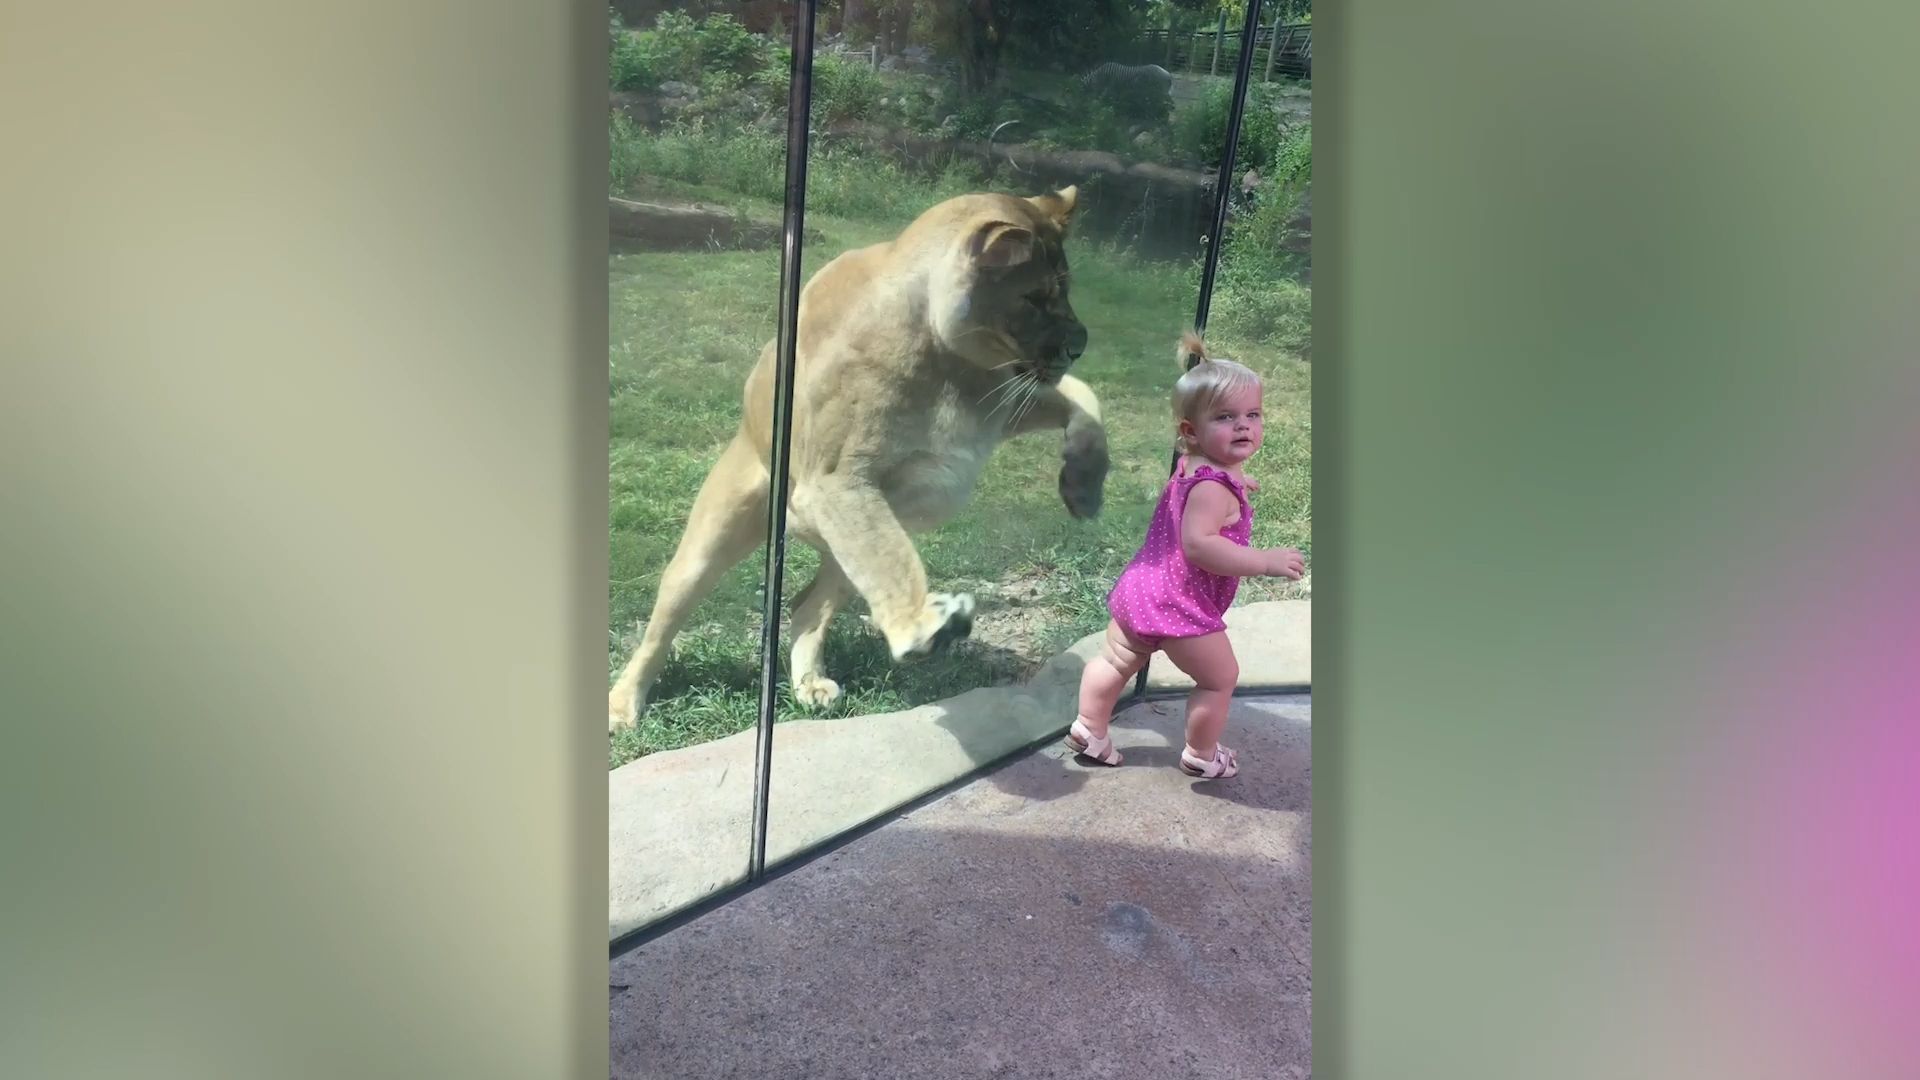 Löwe schleicht im Zoo auf Kleinkind zu und will es anspringen